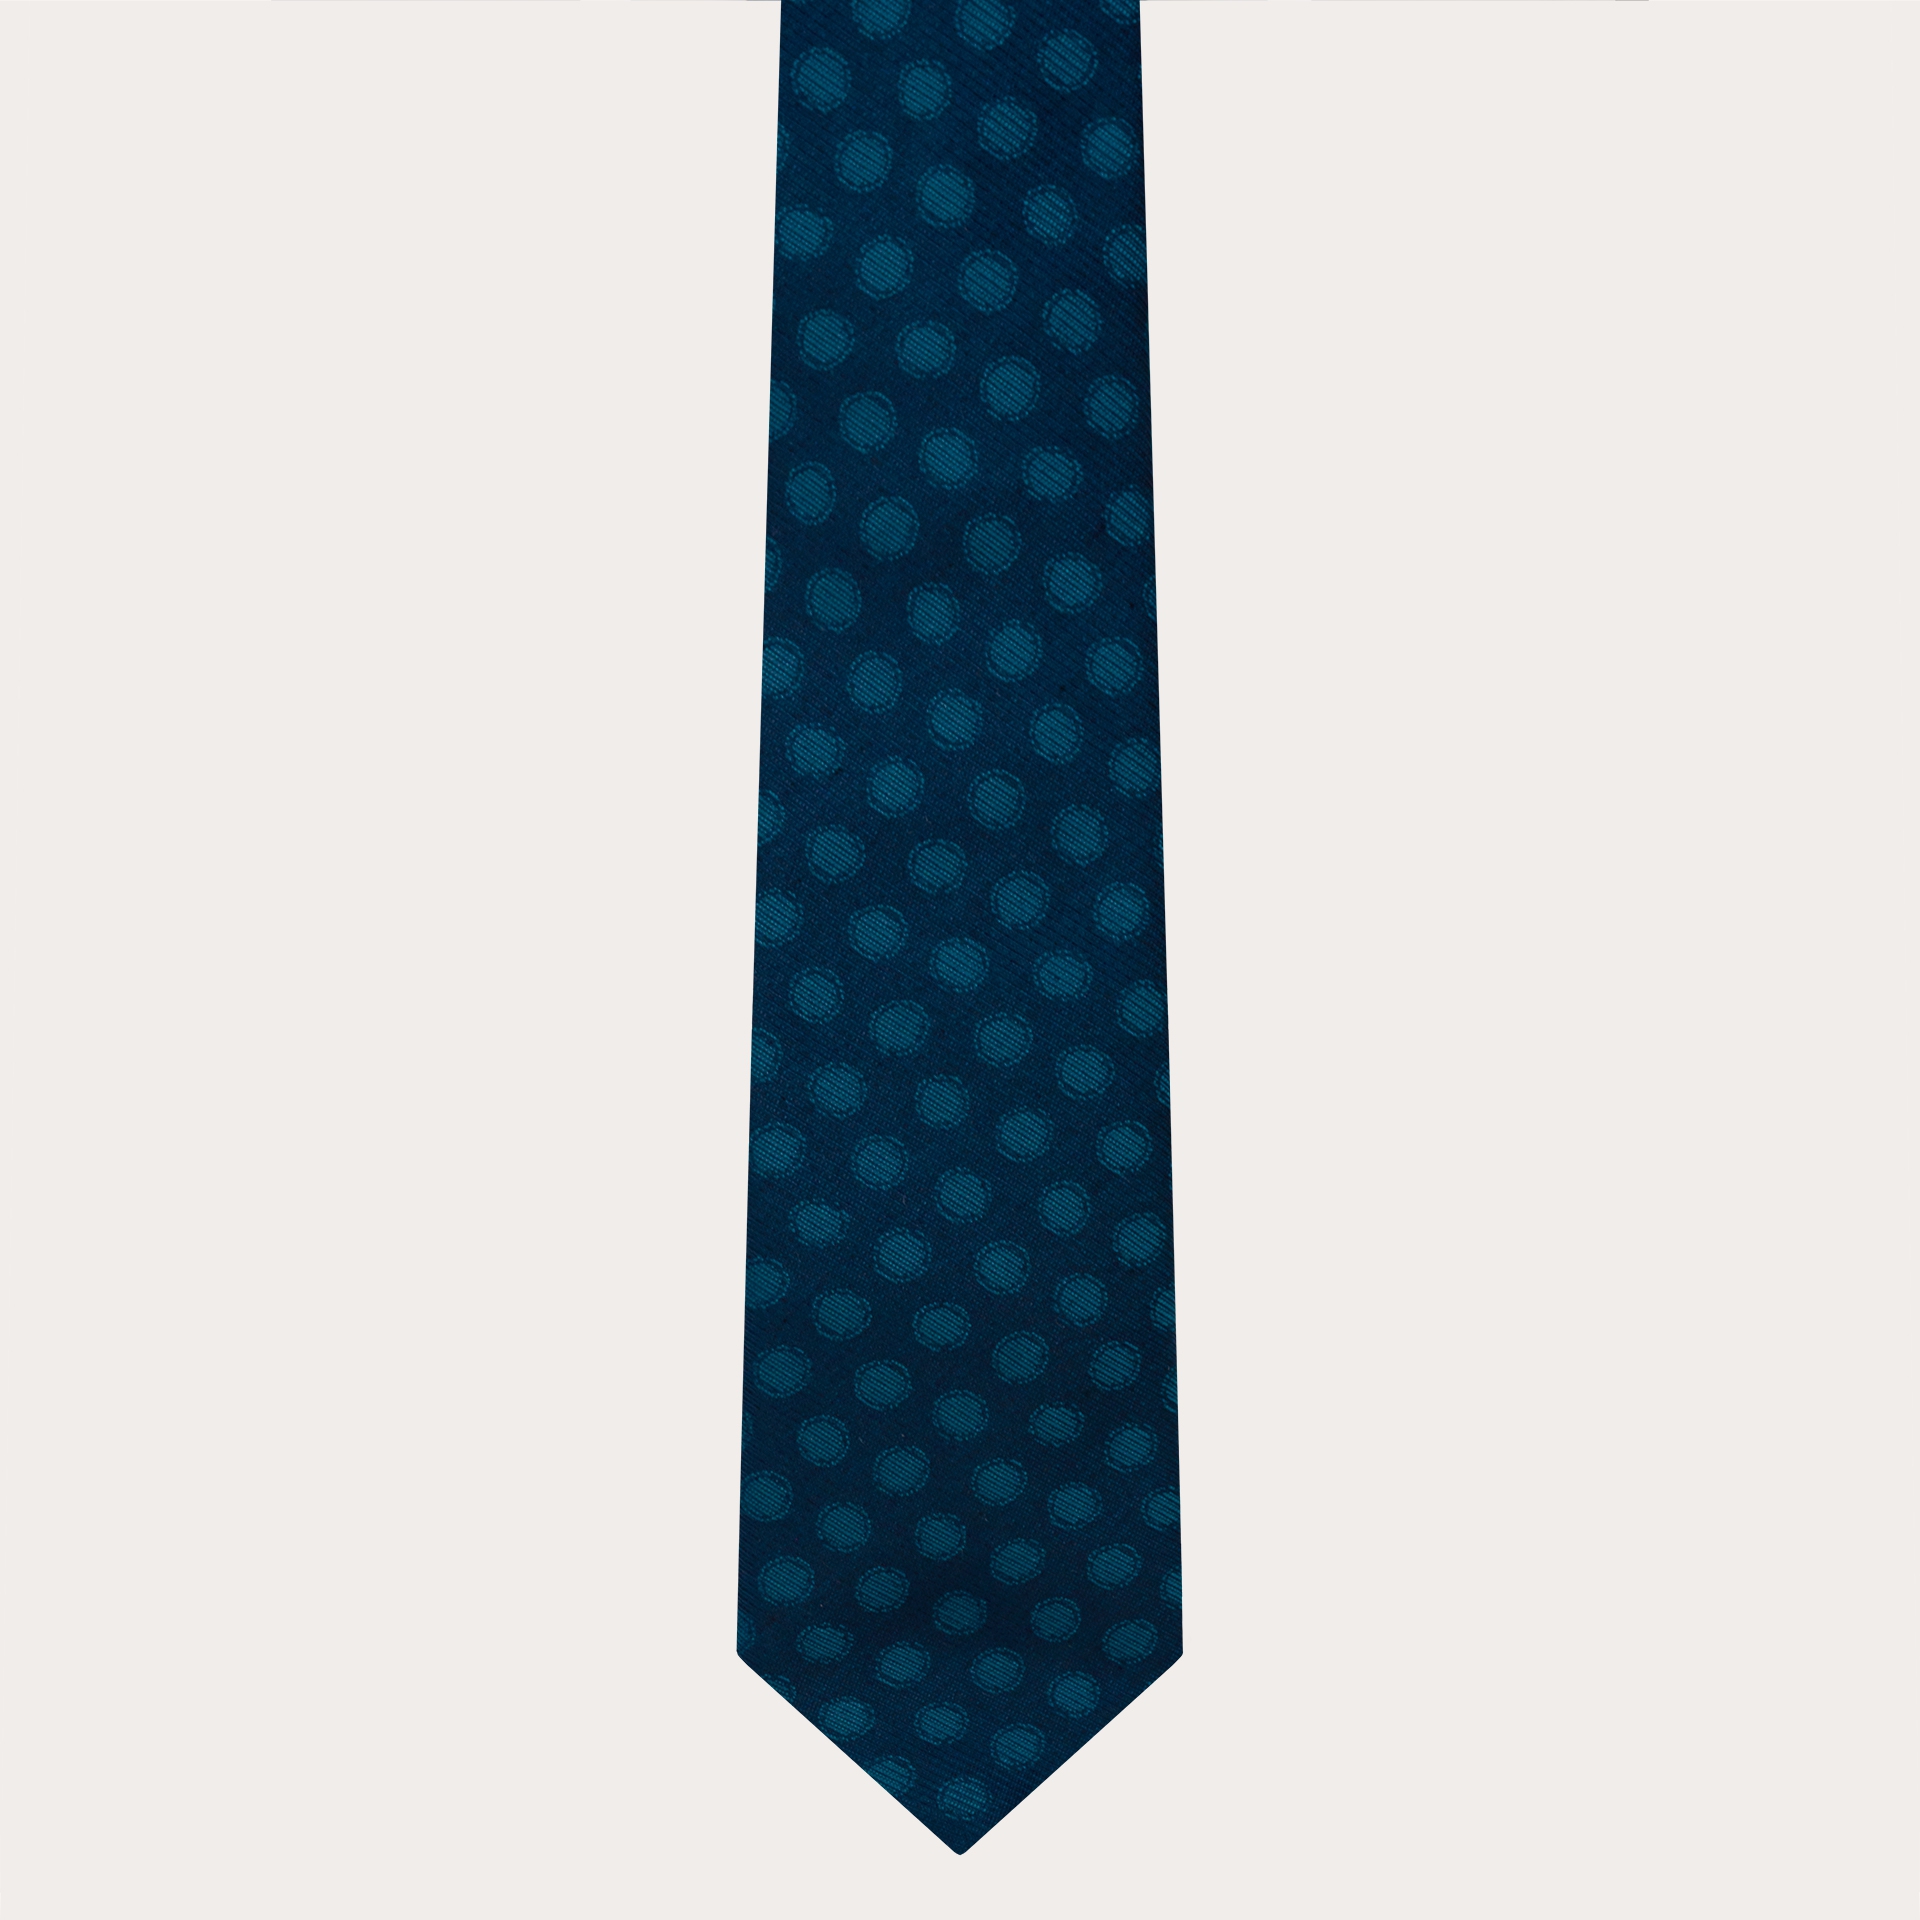 Cravatta in seta elegante, blu con pois petrolio